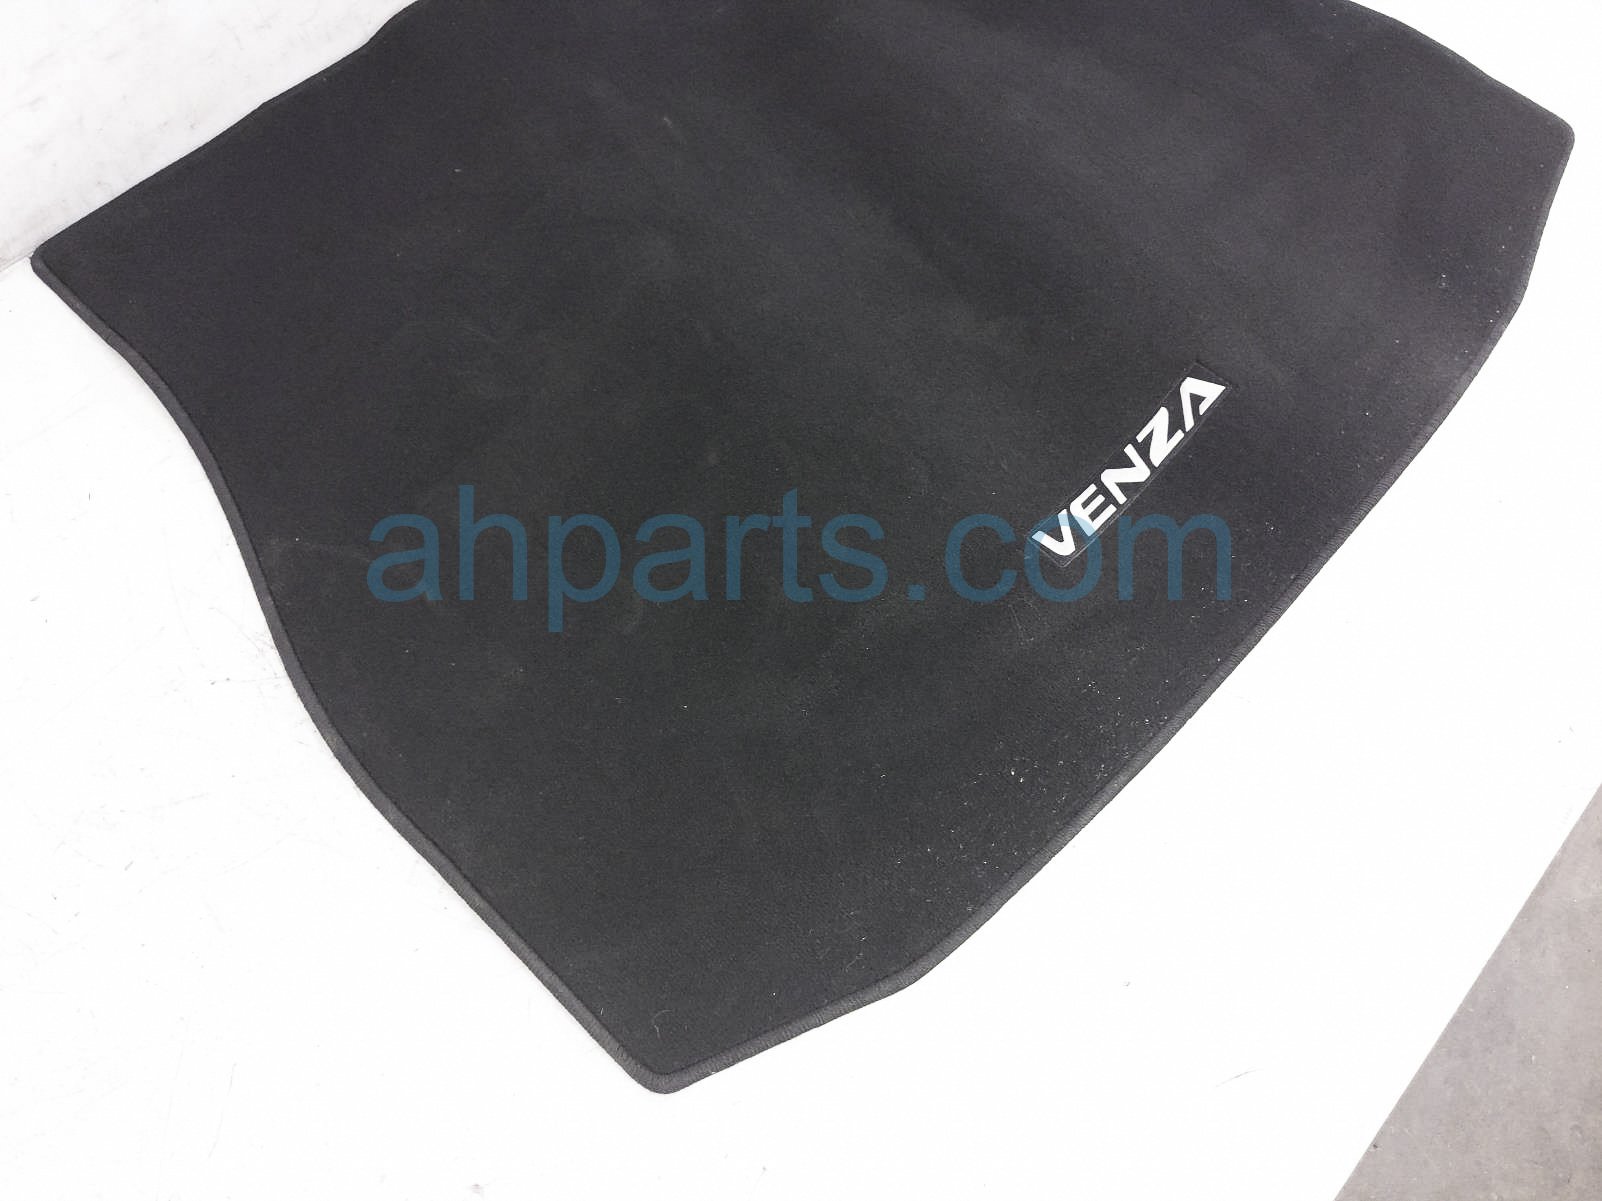 Sold 2021 Toyota Venza Cargo Carpet Floor Mat - Black PT956-48215-02,